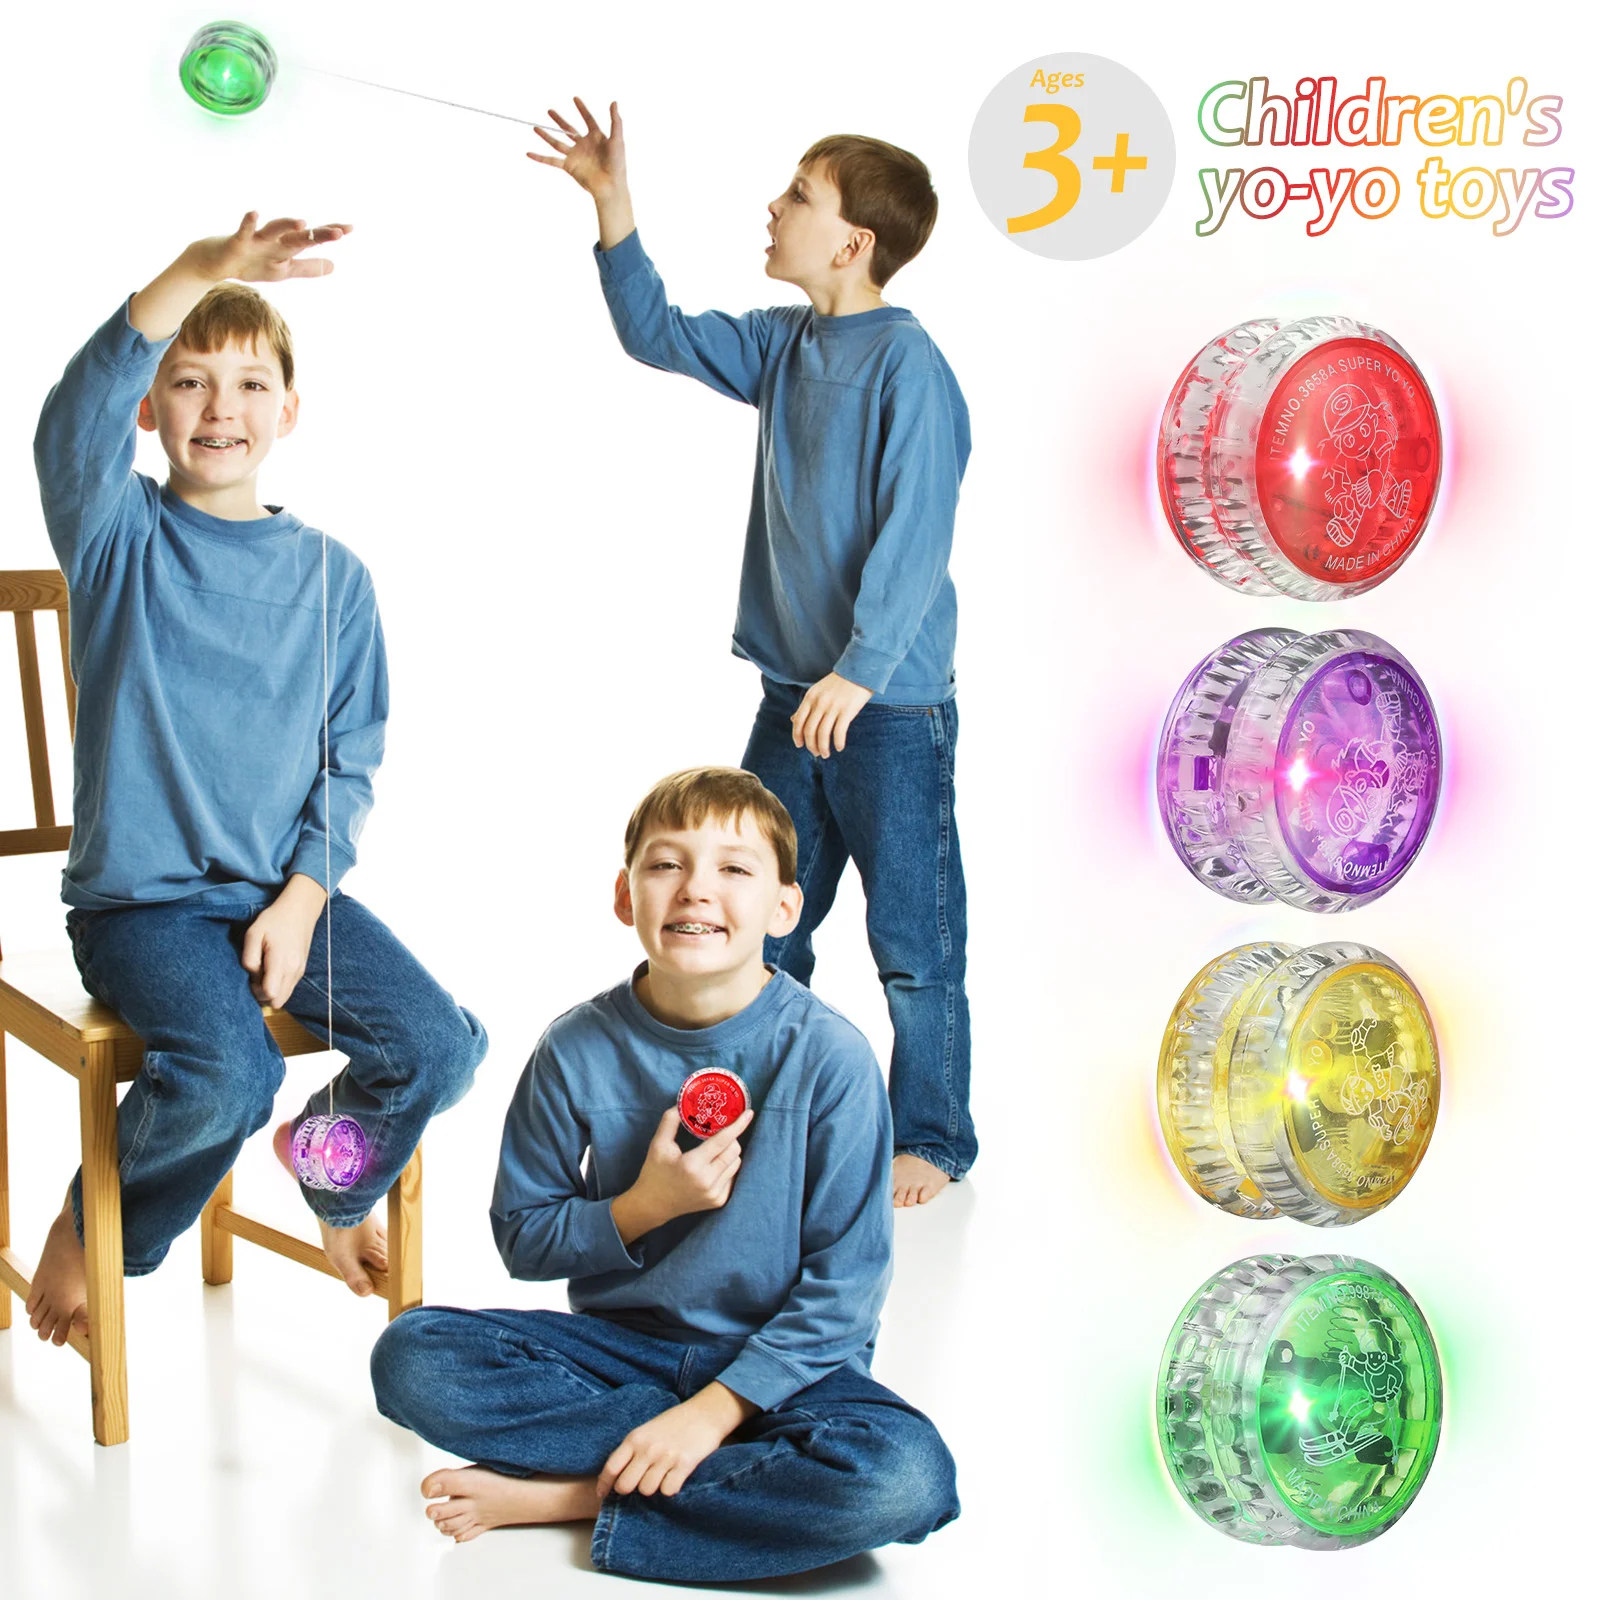 

Детские игрушки Yo-yo, детские игрушки, игрушки для начинающих, мигающие шарики, йо-йо на кончик пальца